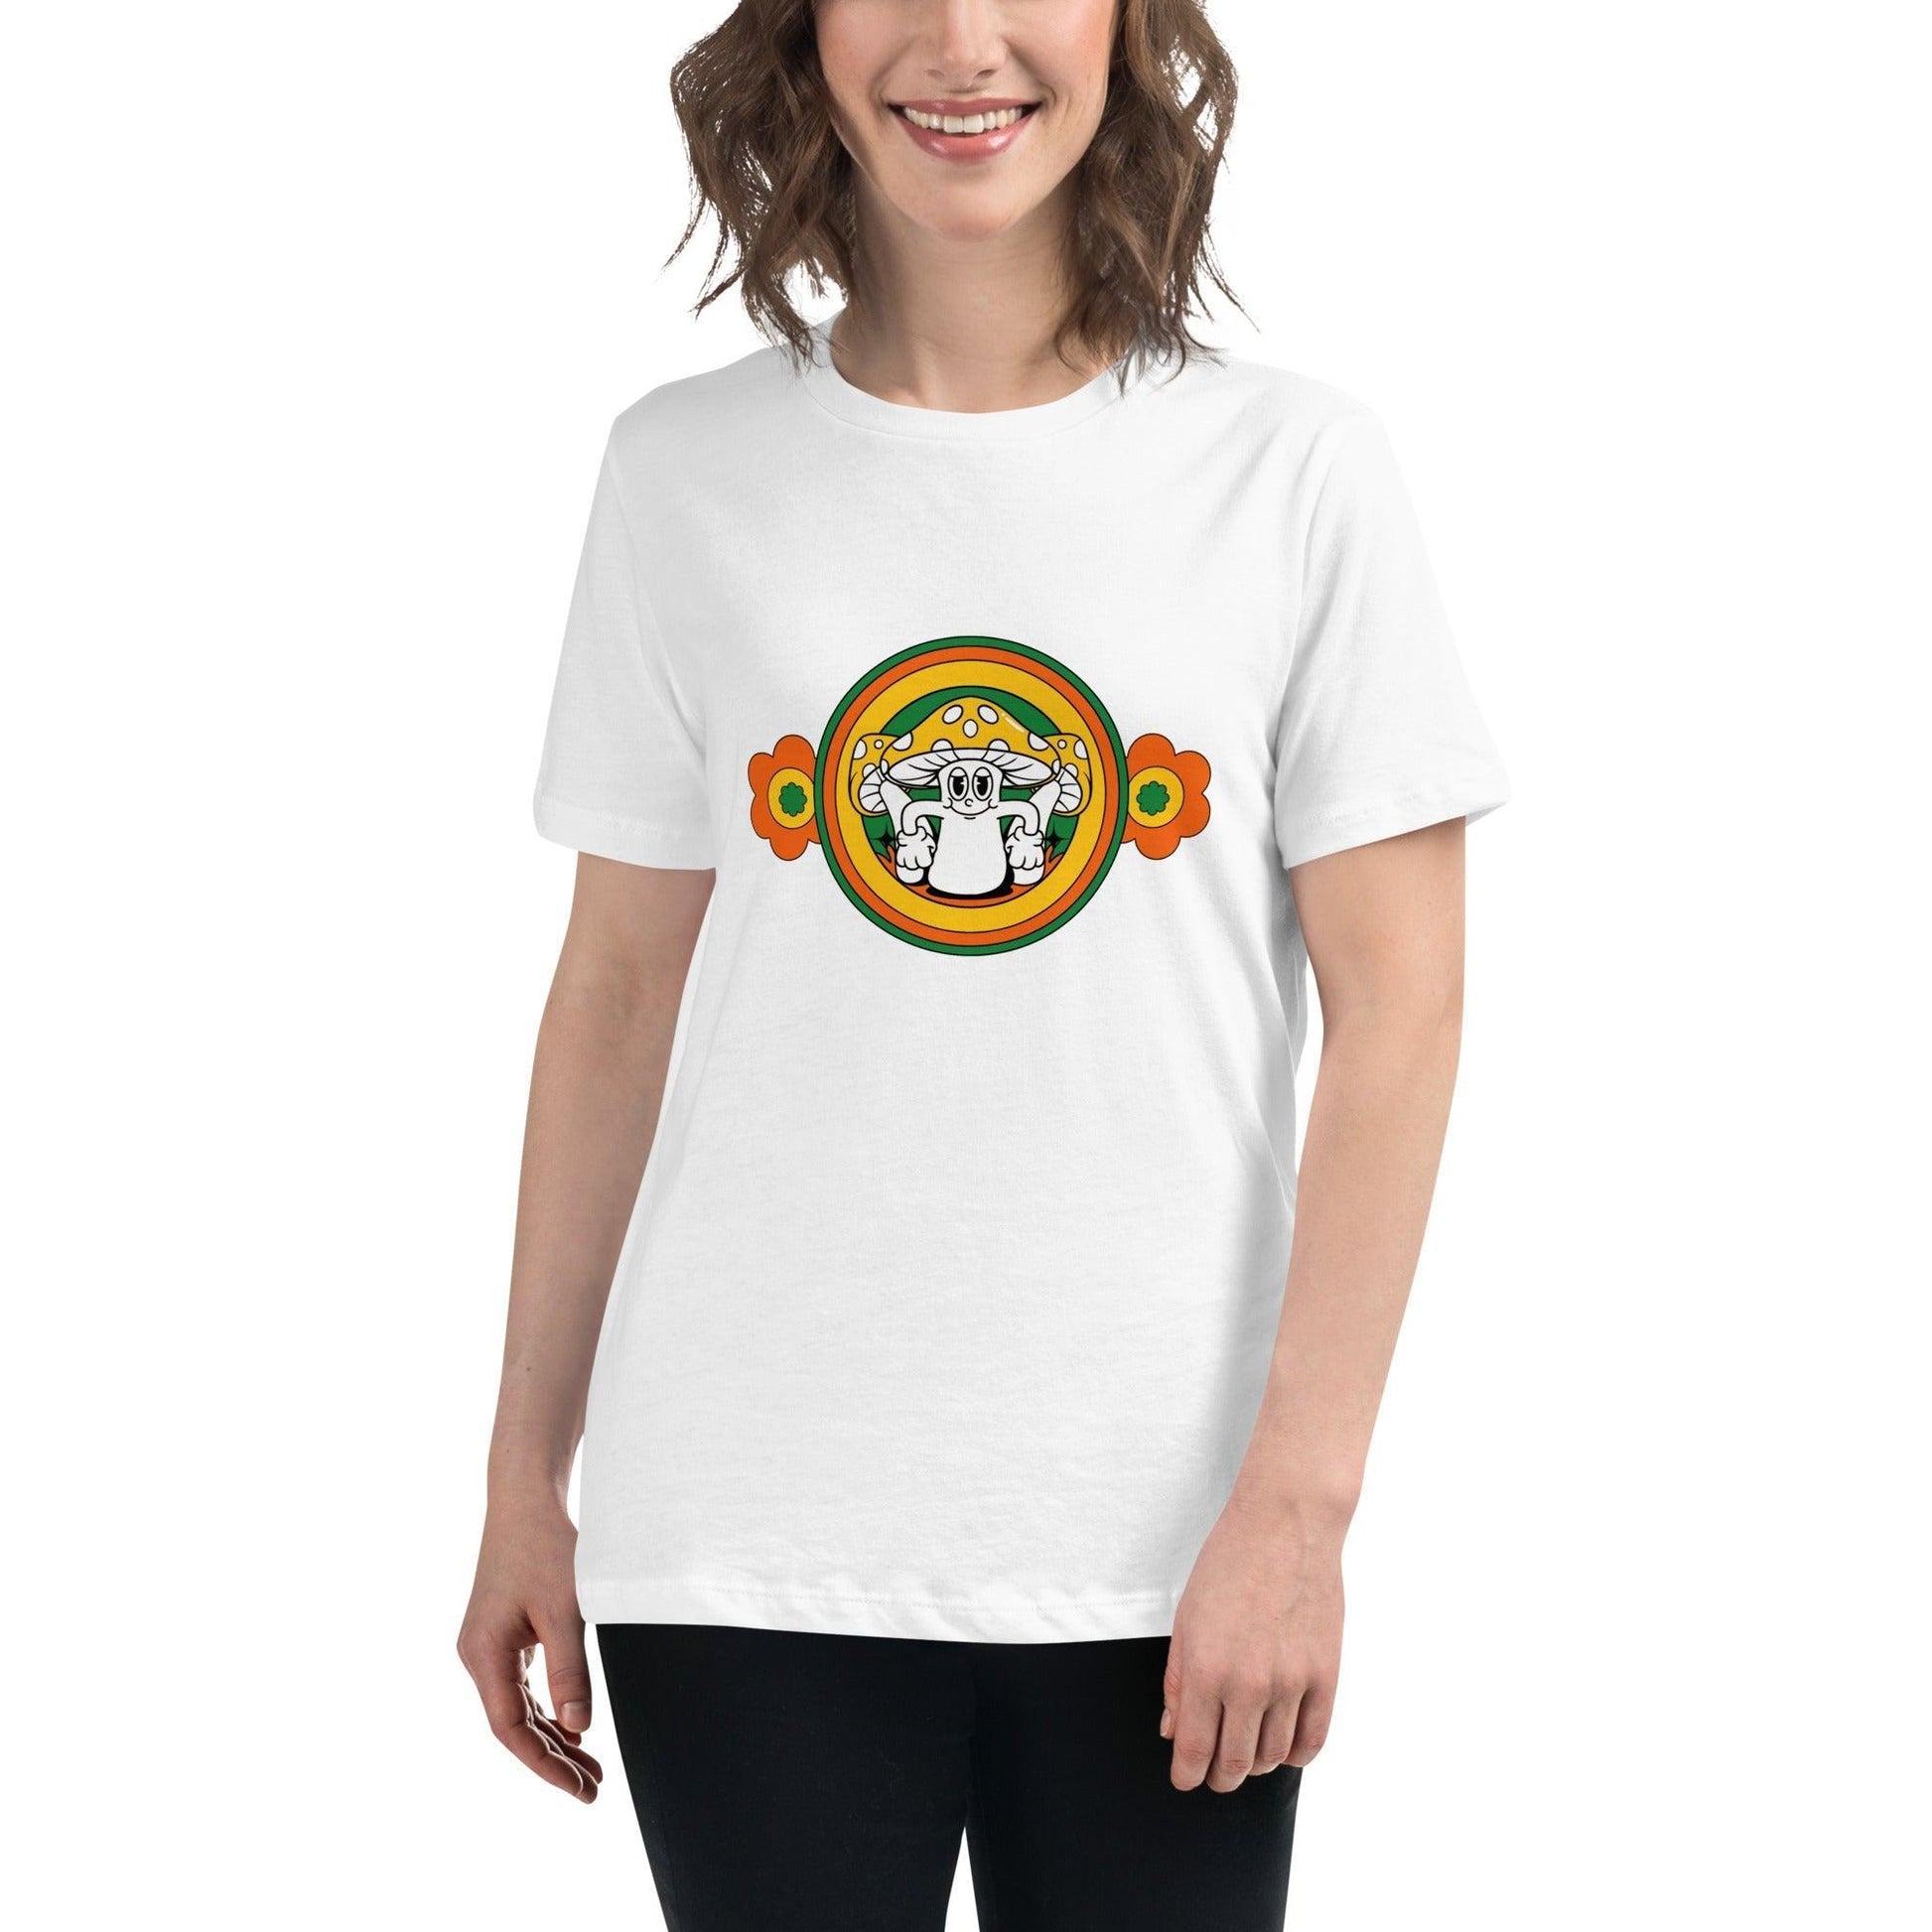 Camiseta suelta "Setita floral" | ¡La camiseta perfecta para un look bohemio y chic! - Silvornique